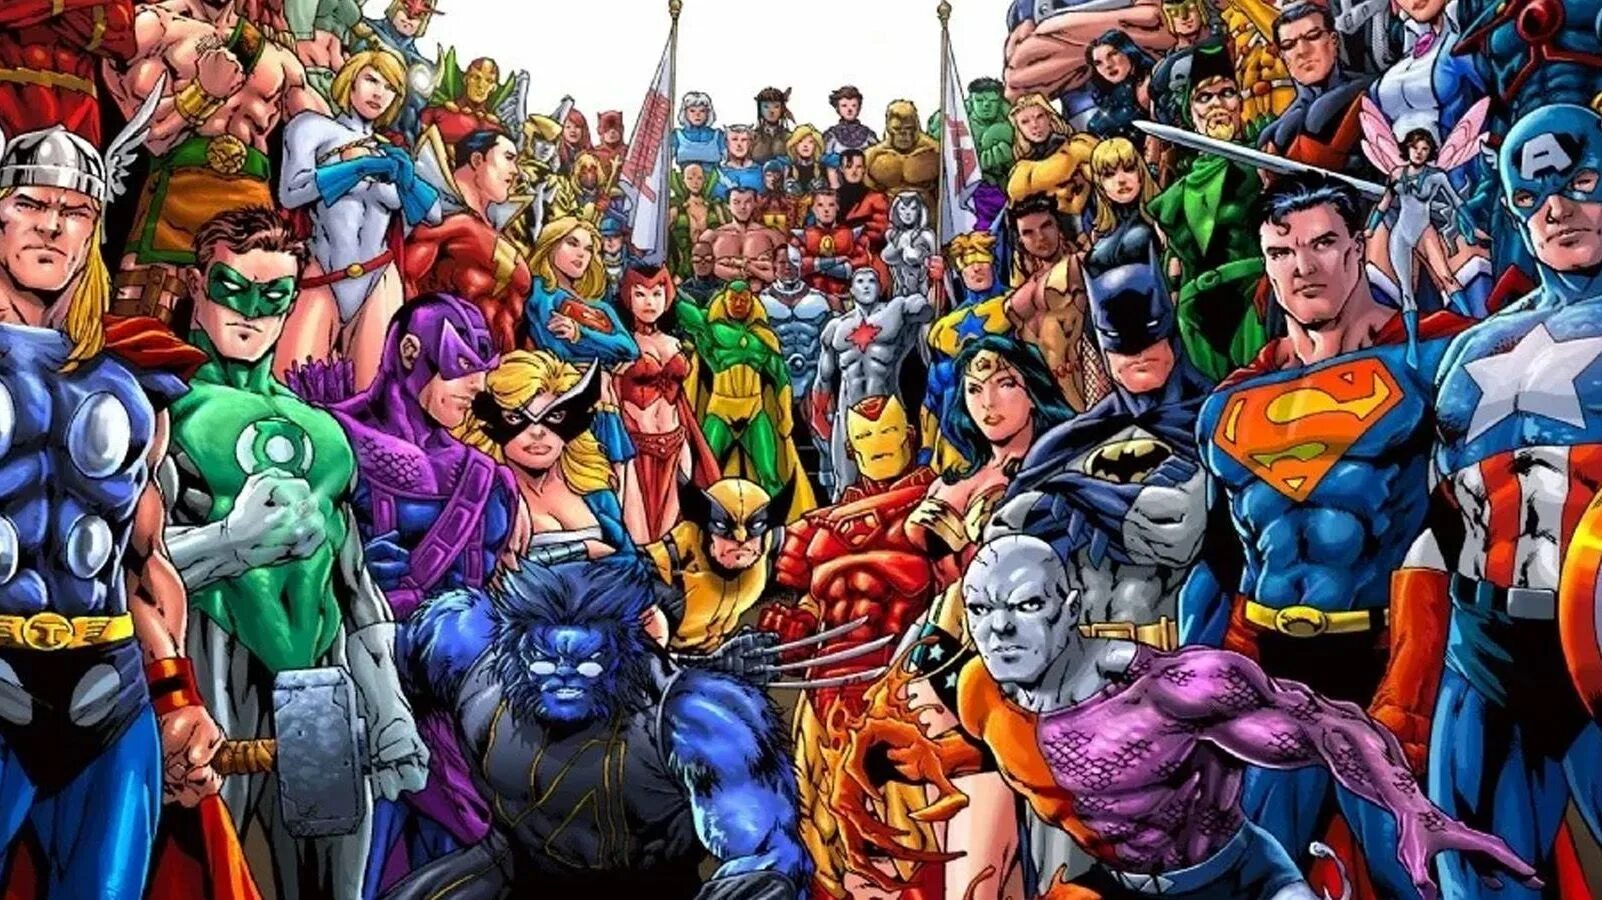 Is super heroes. Супергерои DC vs Marvel. Марвел vs DC. Комиксы Марвел и ДС. Популярные герои комиксов.